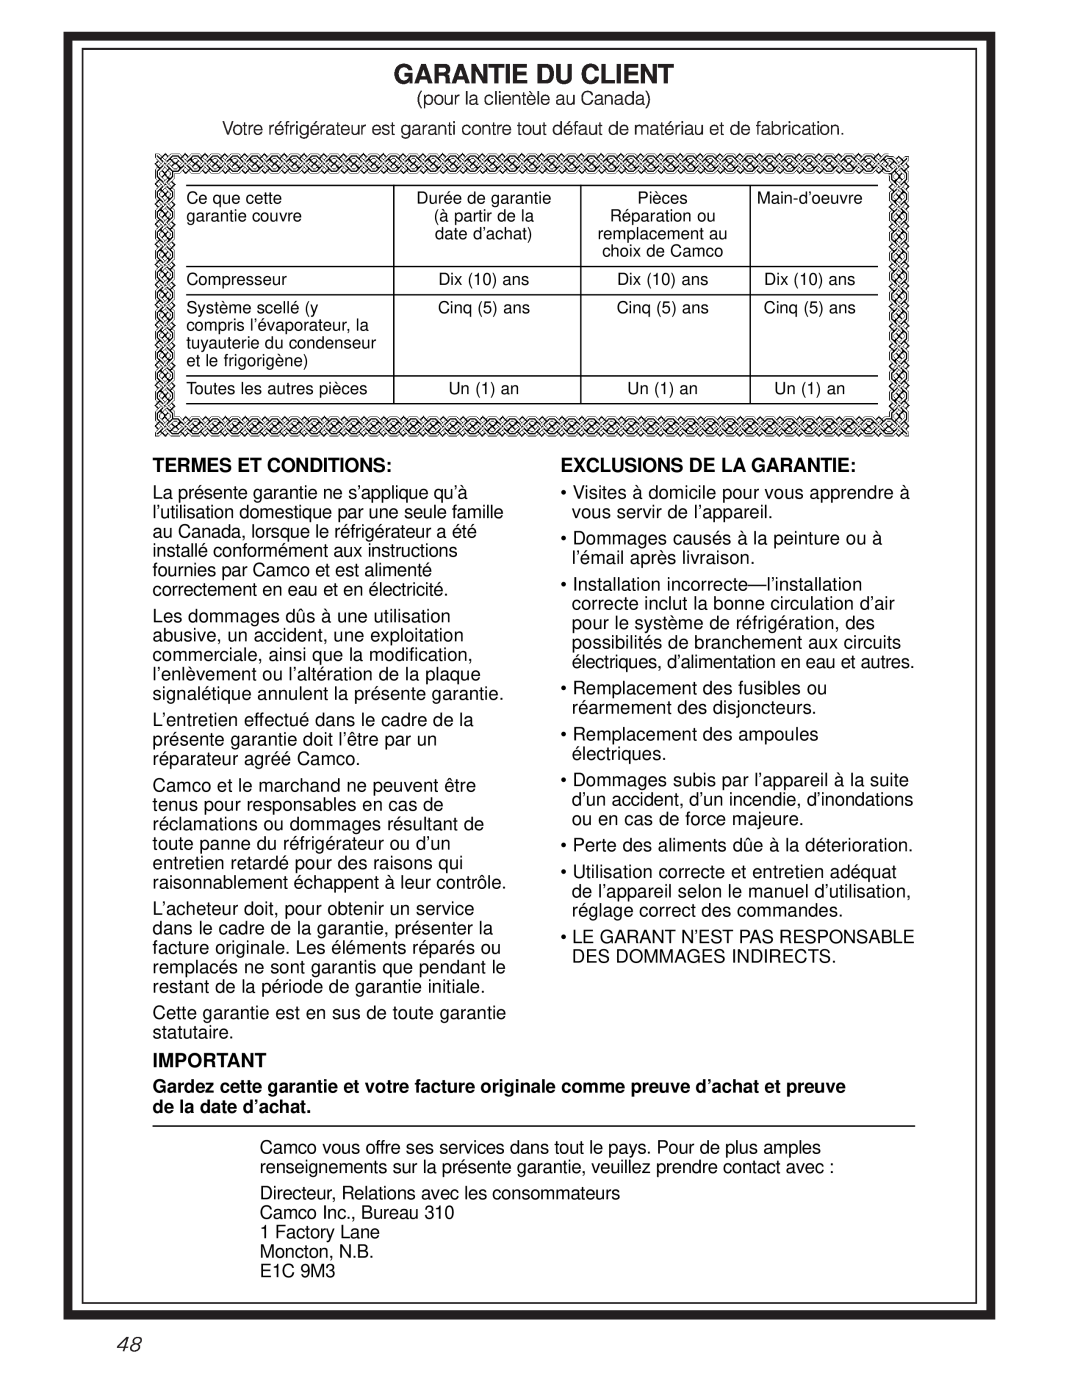 GE 49-60080 7-00 JR, 162D7744P009 owner manual Garantie Du Client, Termes Et Conditions, Exclusions De La Garantie 